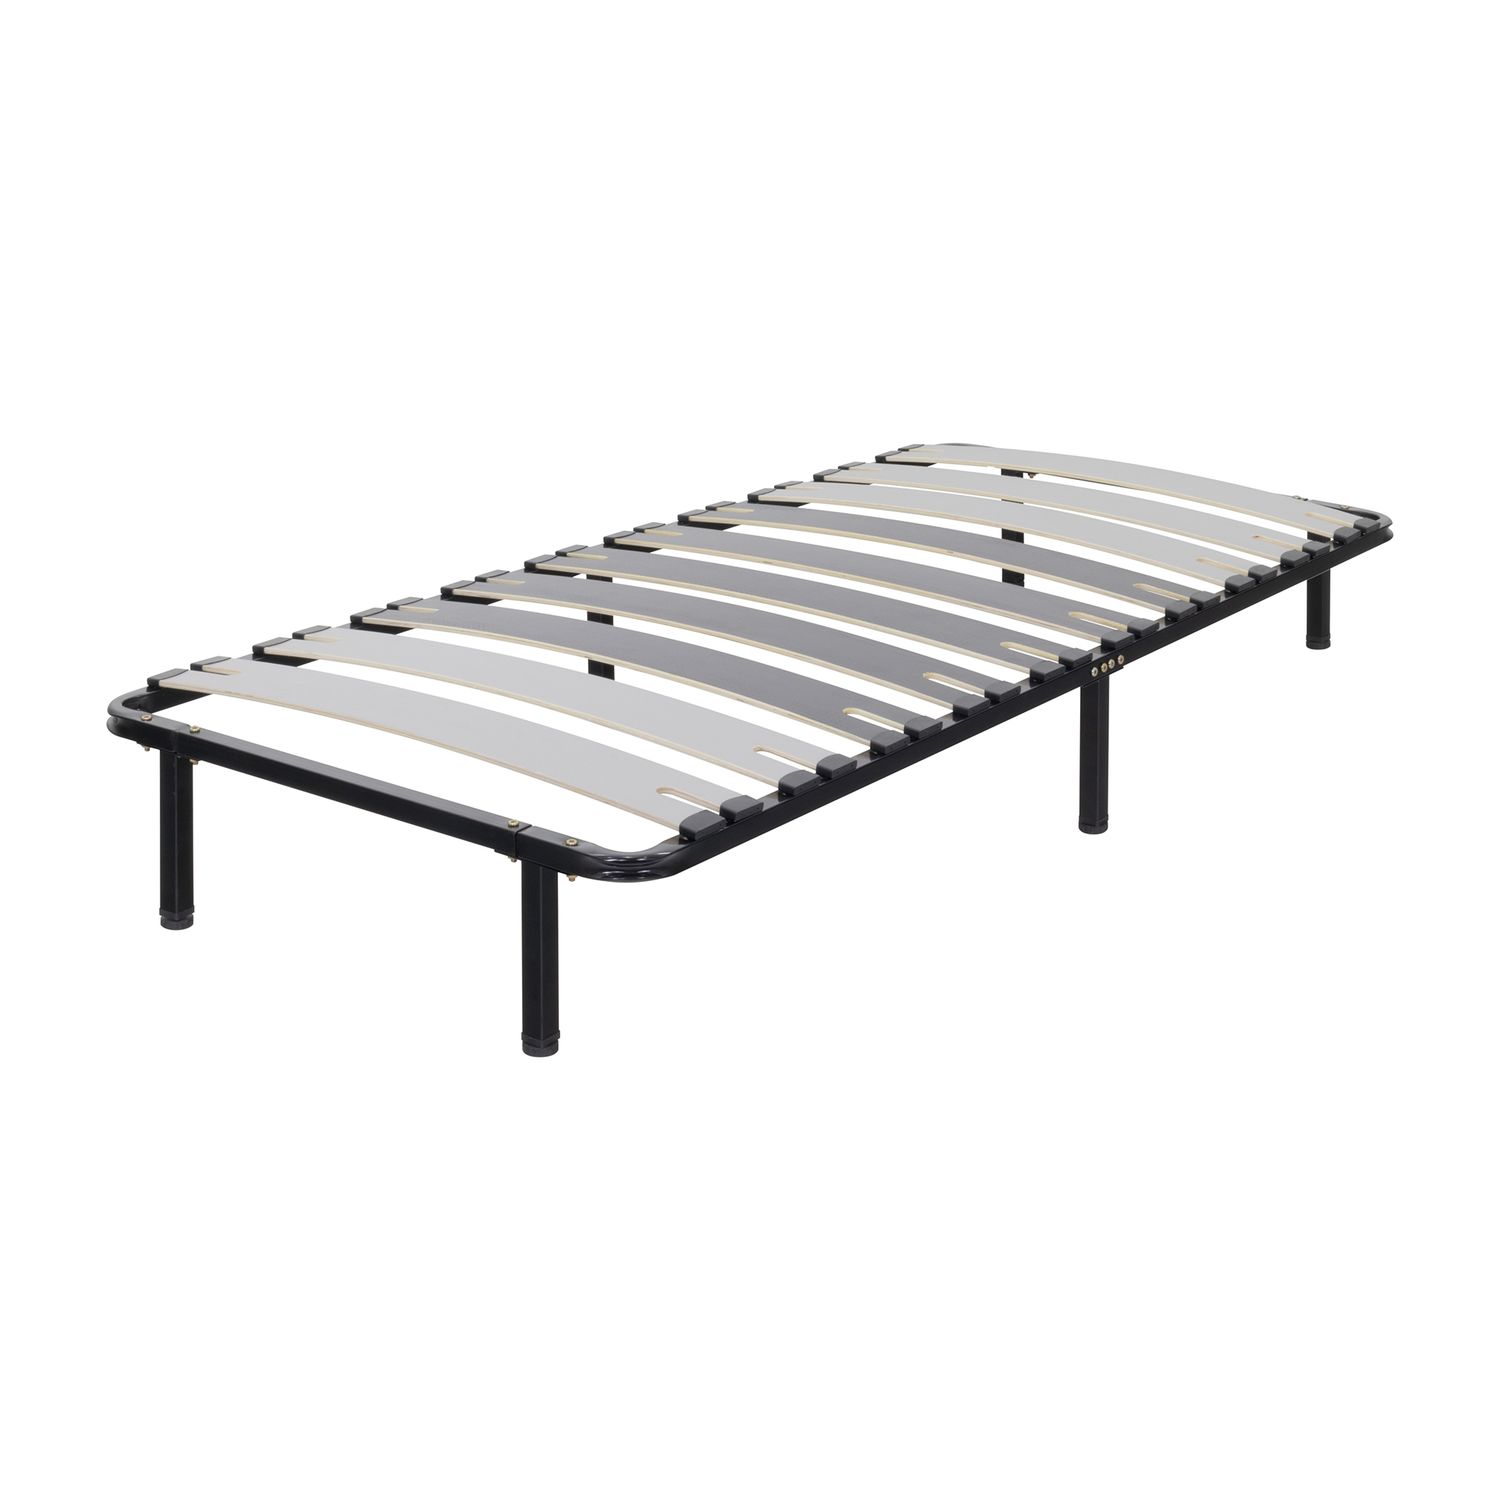 Metallbett Deck mit Breiten Latten für alle Betten und Matratzen geeignet